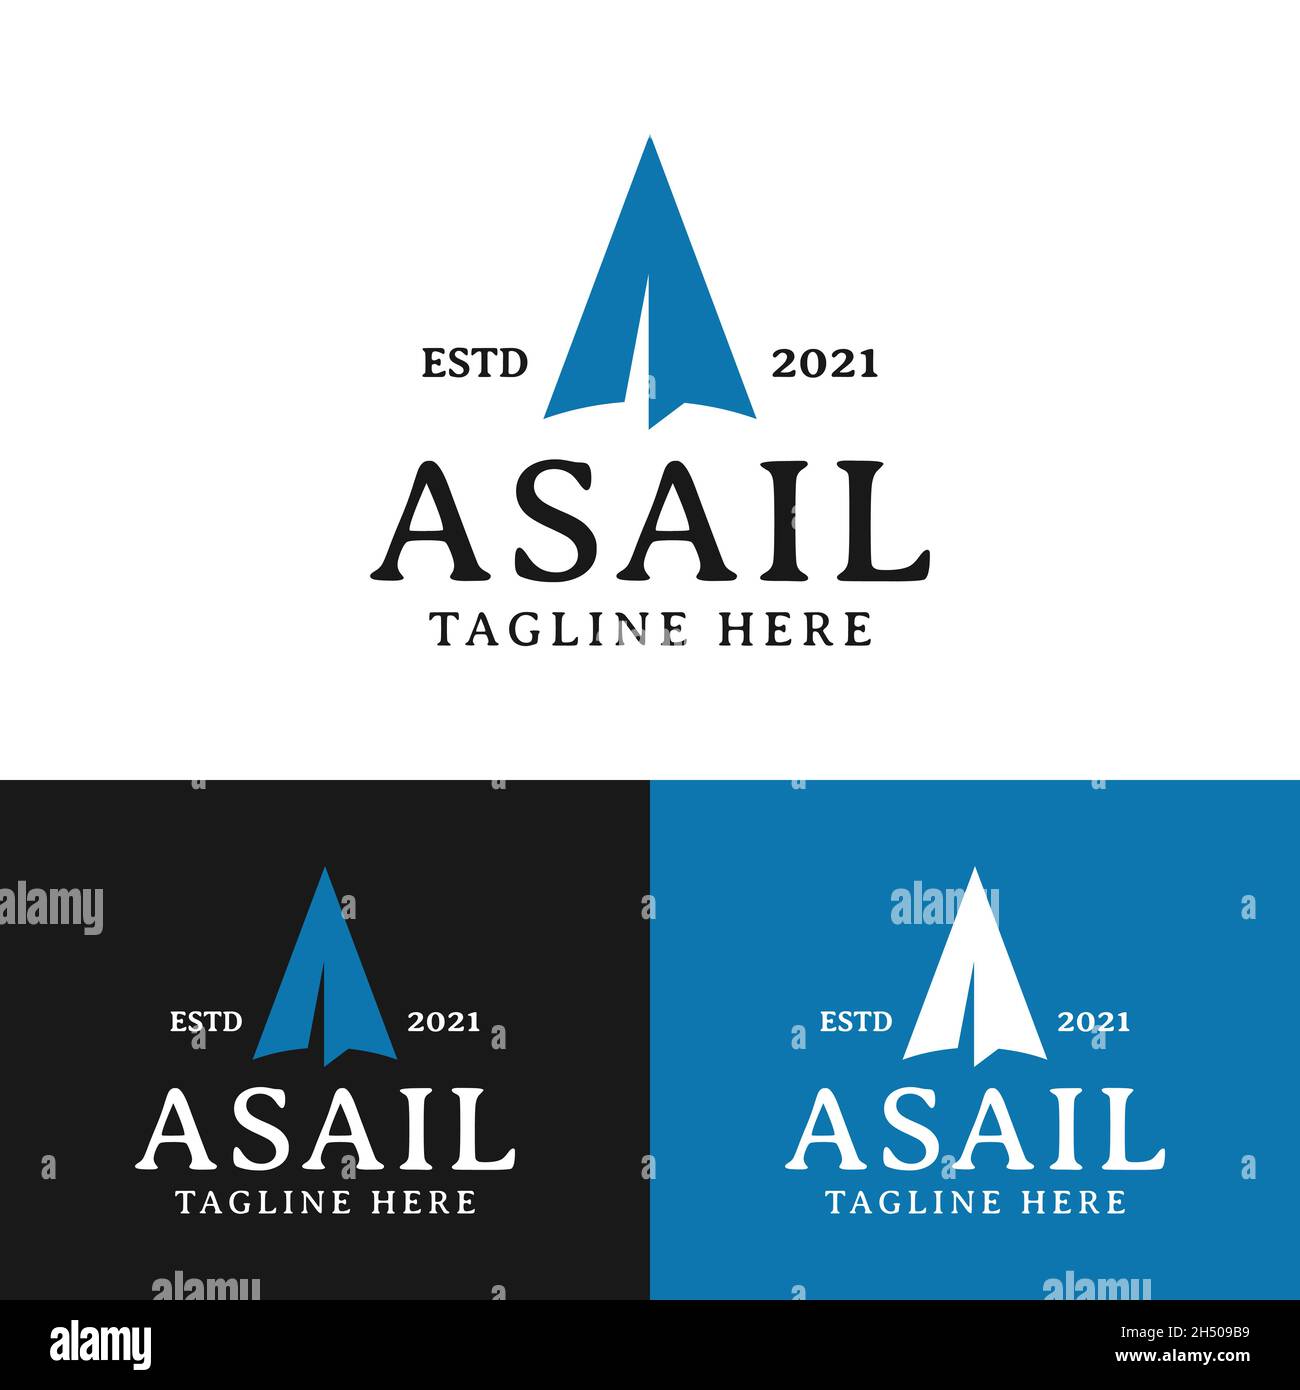 Schreiben Sie eine Vorlage Für das Design des Sail-Logos. Geeignet für Segelschiff Surfen Yacht Werft Hafen Hafen Tourismus Sport Business Company Marke etc. Stock Vektor